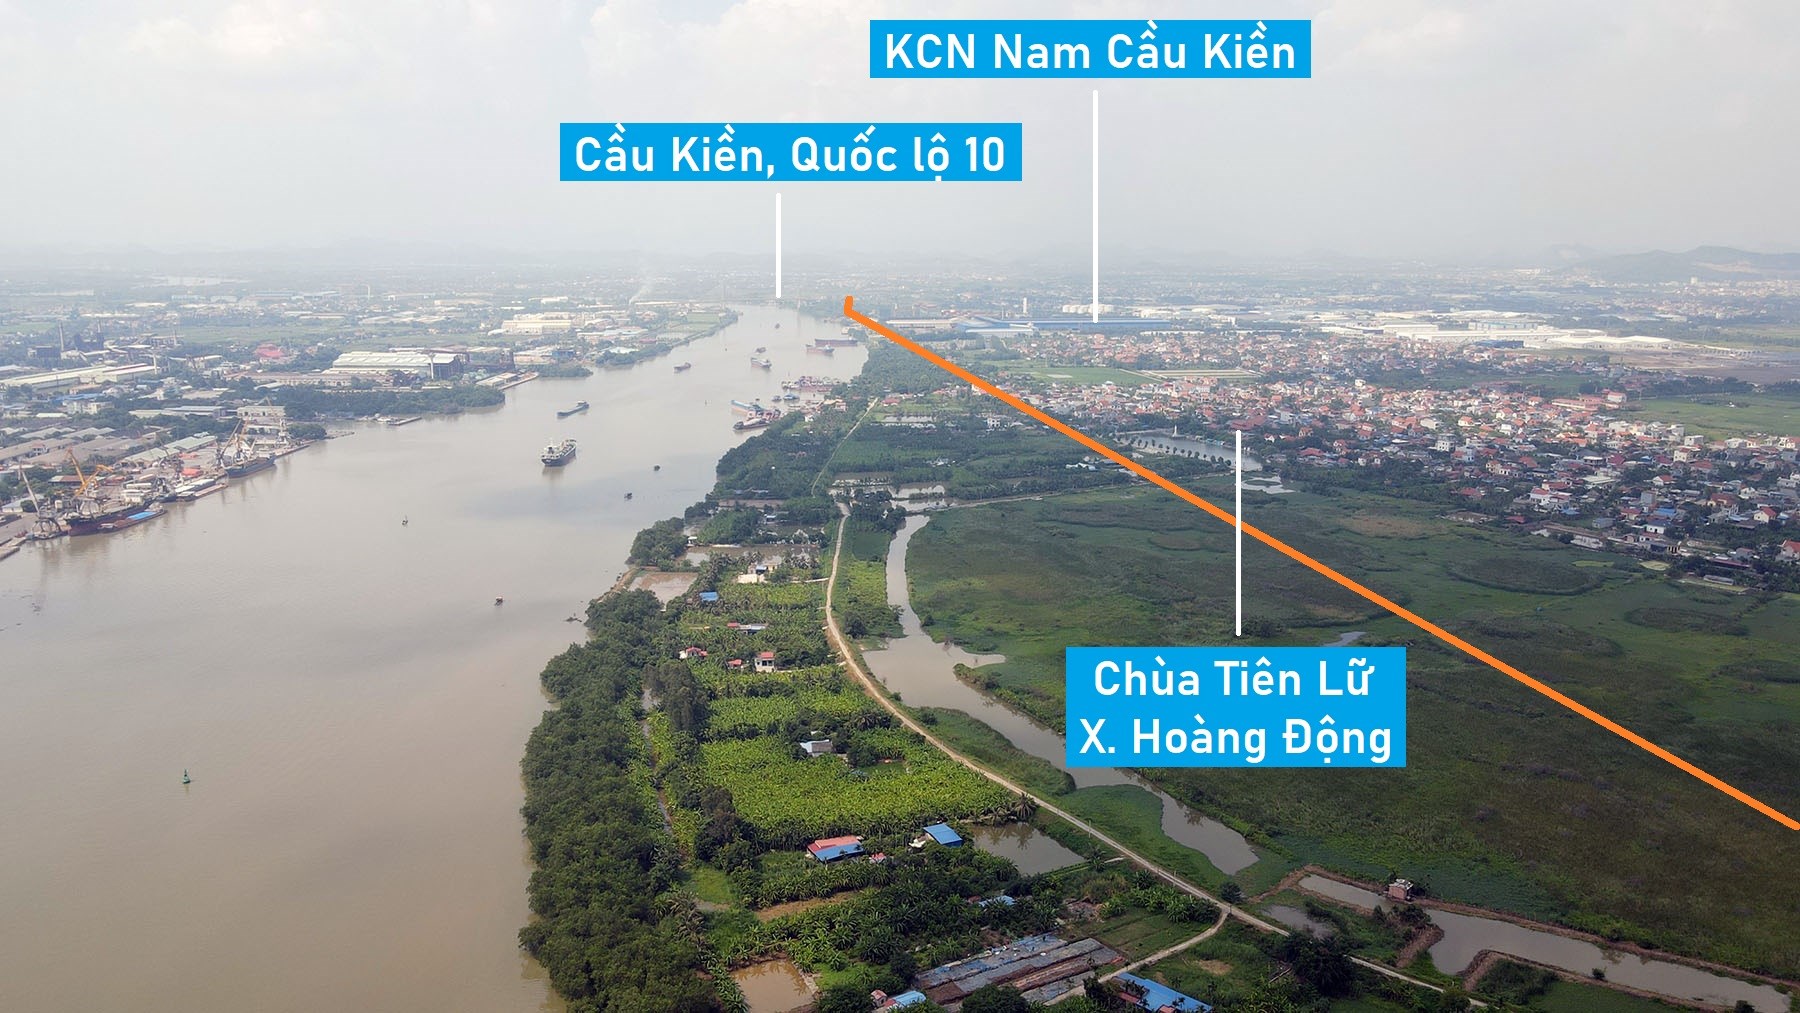 Toàn cảnh vị trí dự kiến quy hoạch cầu vượt sông Cấm nối Thủy Nguyên - An Dương, TP Hải Phòng